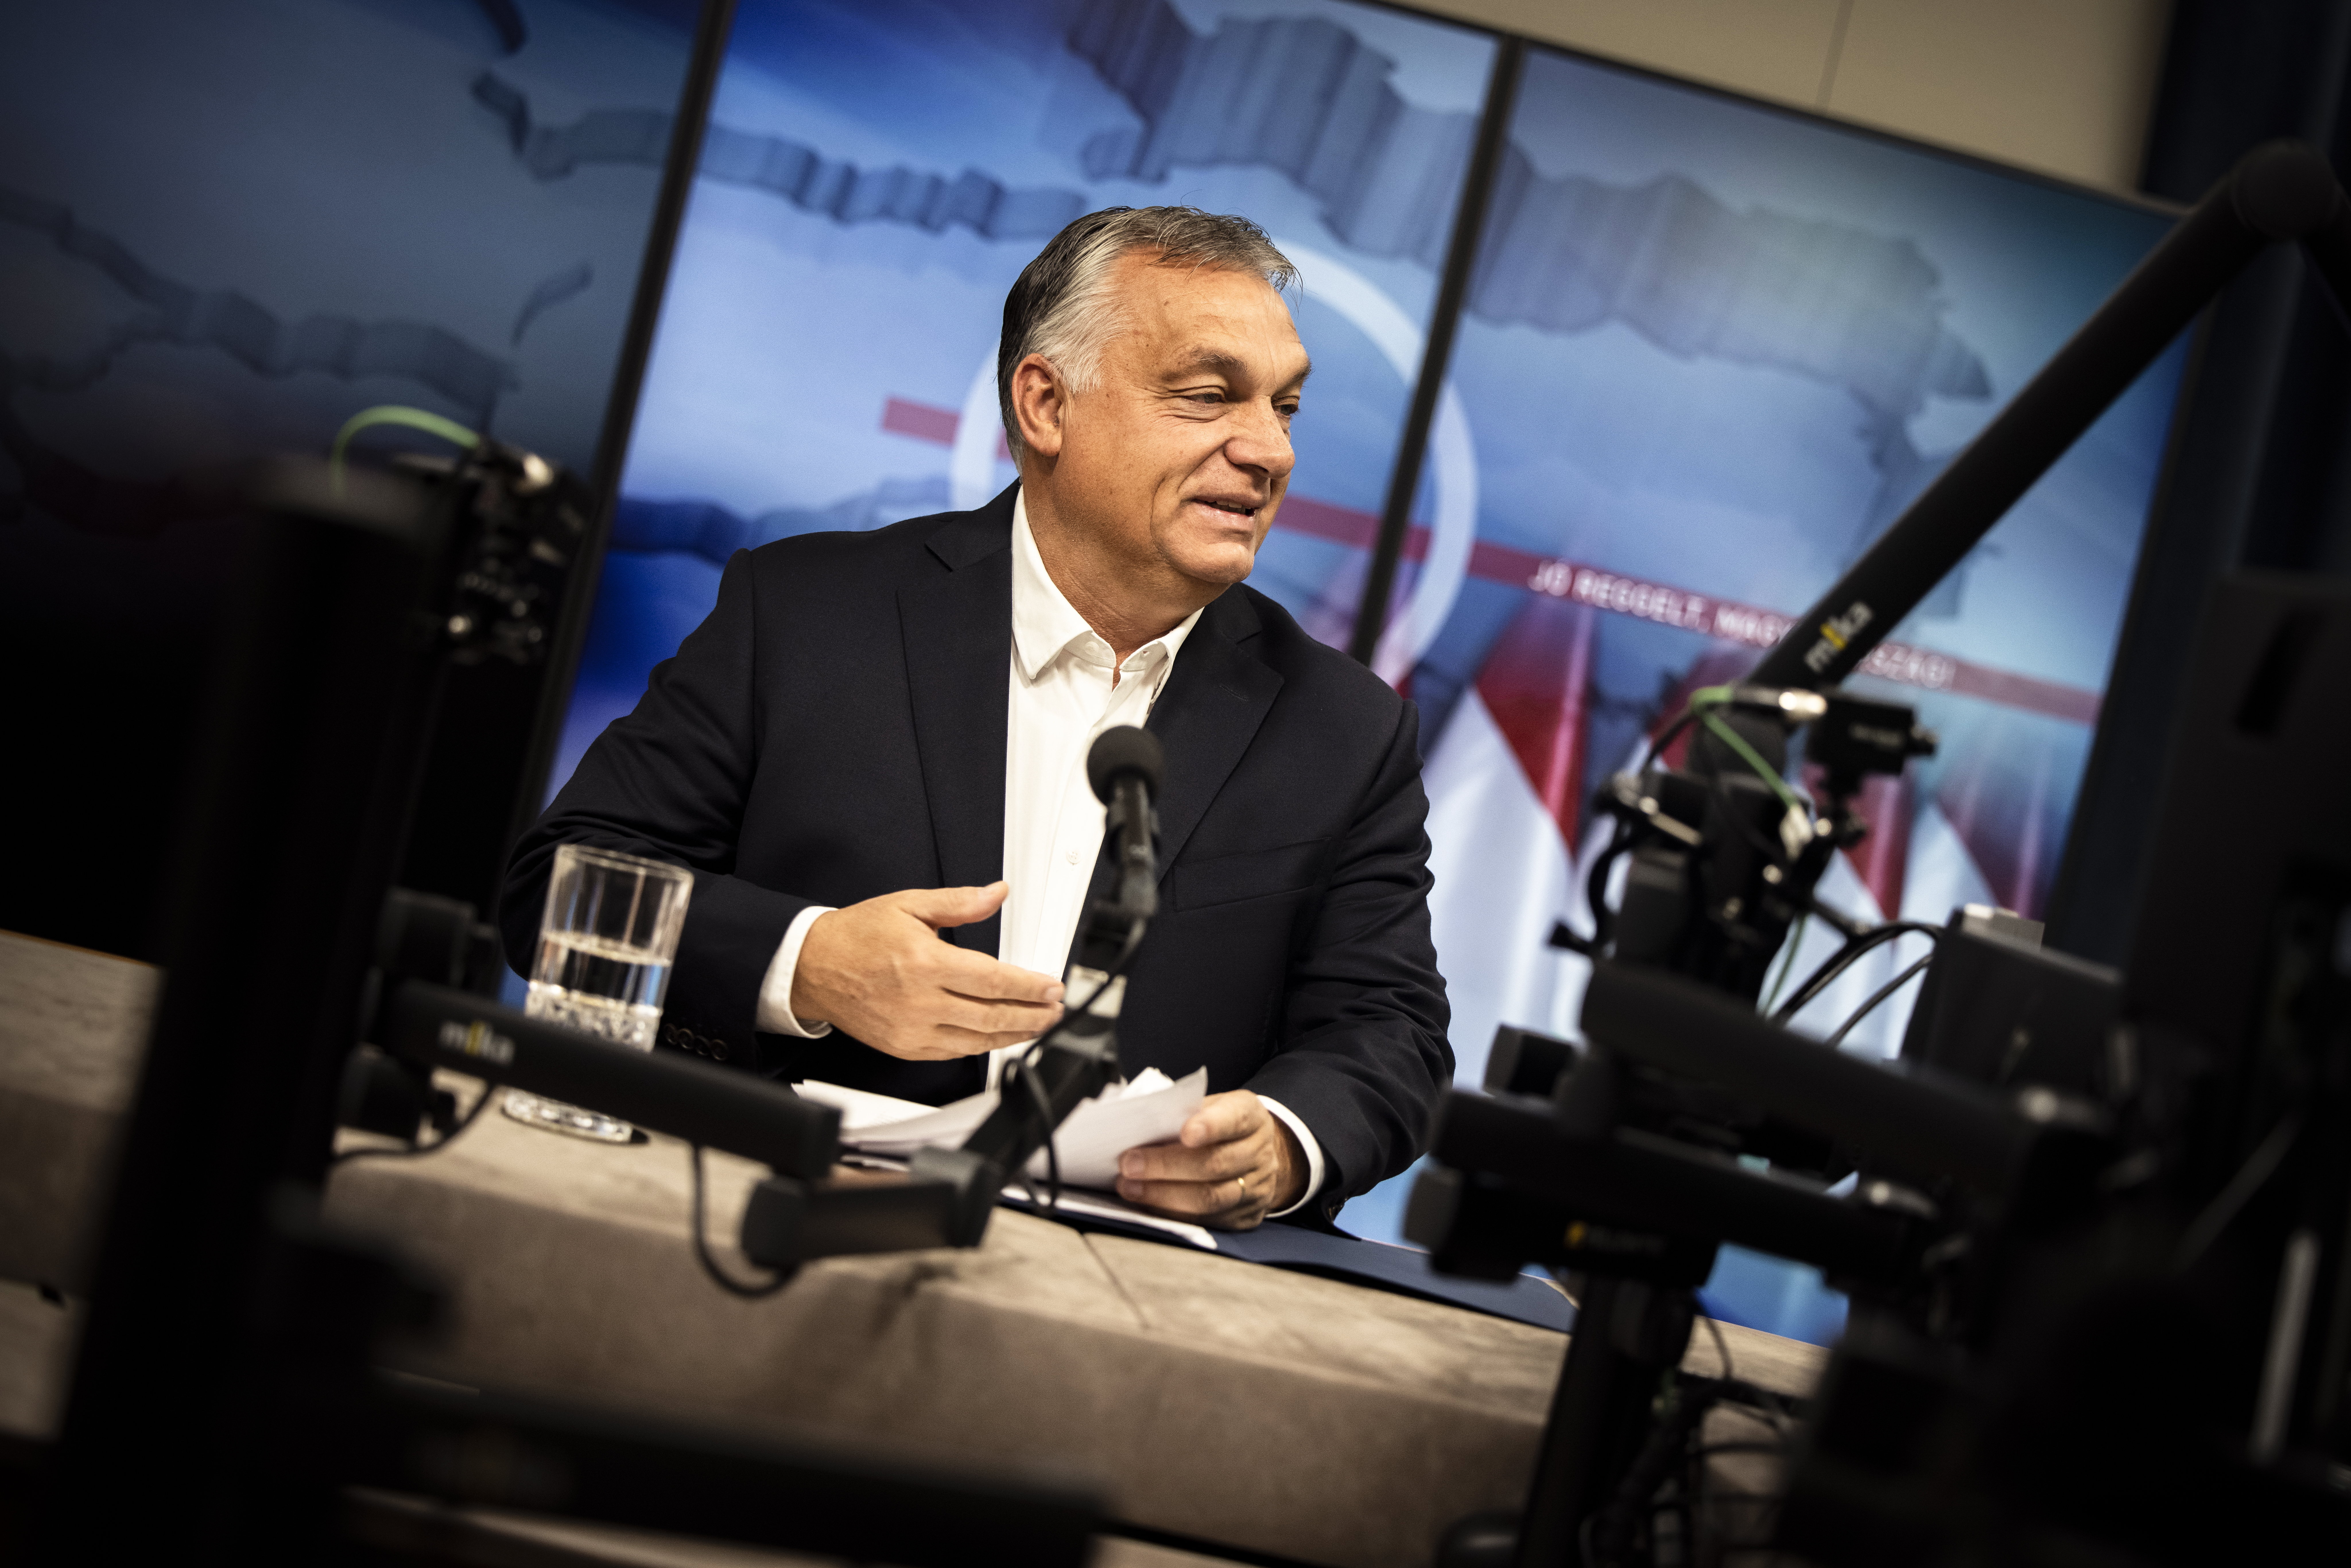 Orbán Viktor: vita volt a képviselők közt Finnország felvételéről a NATO-ba